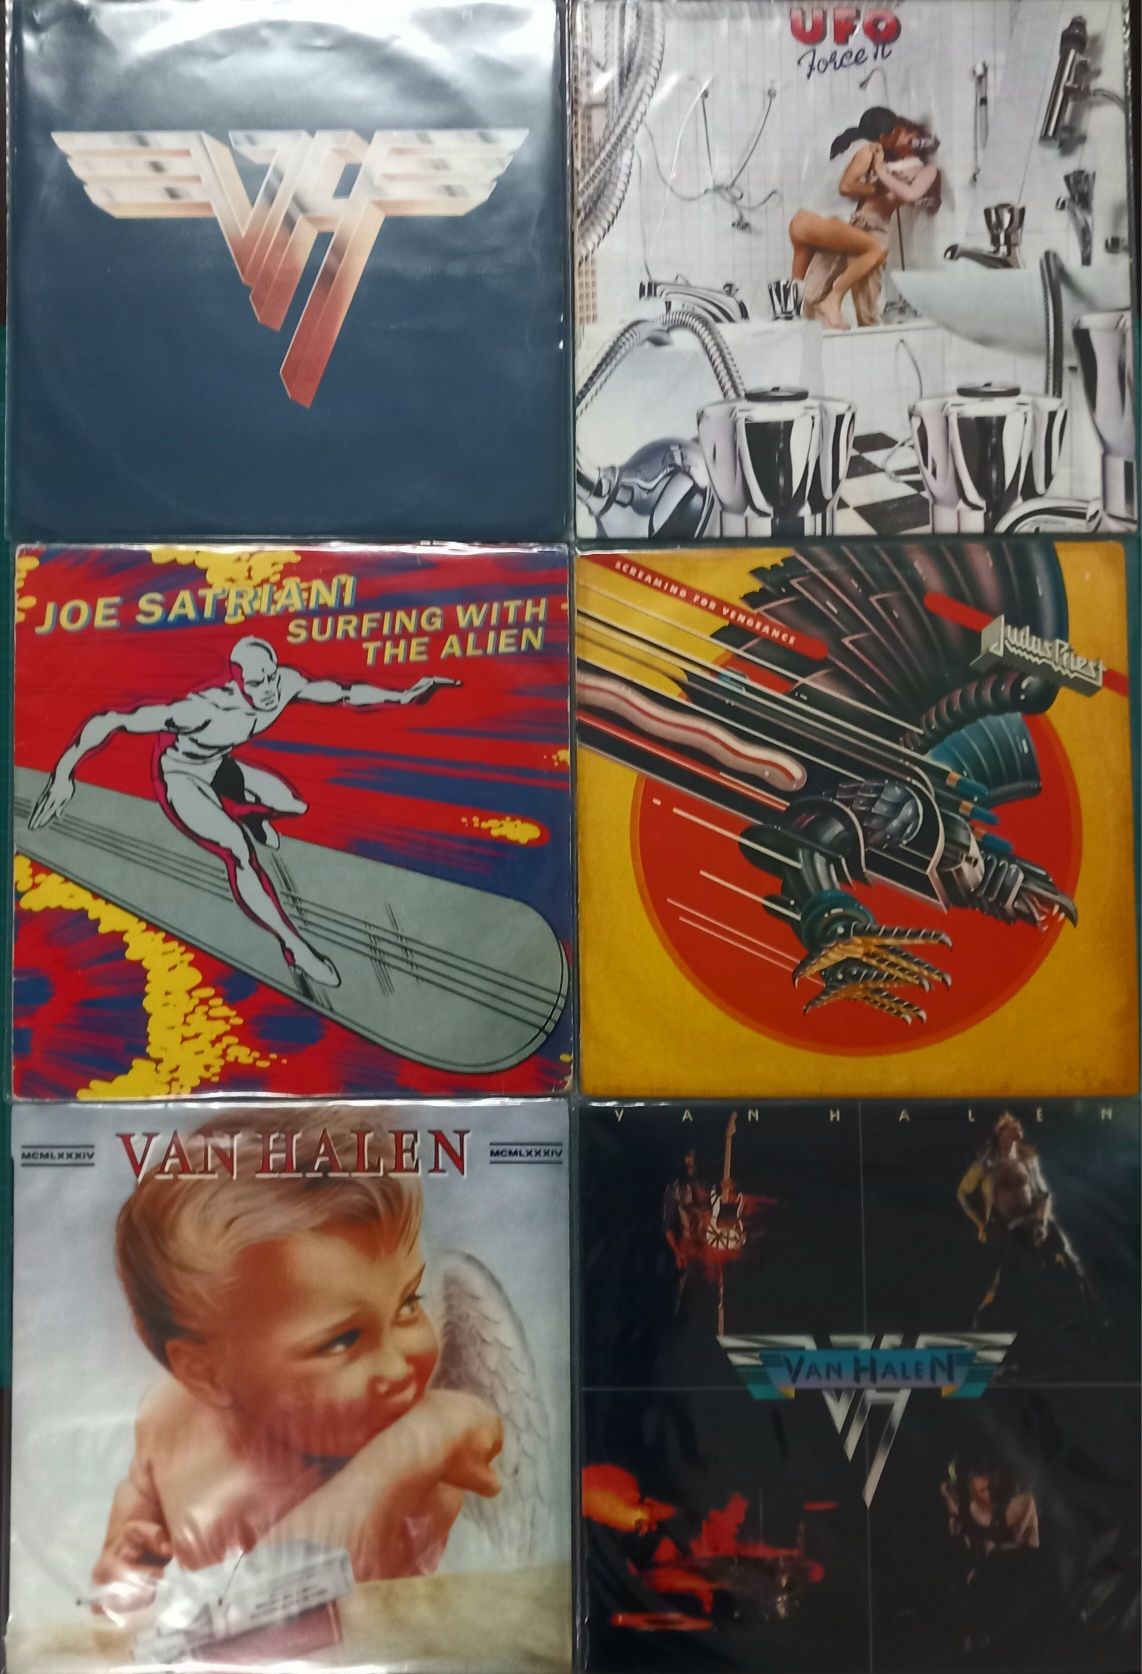 LPs Pop Rock, Classic Rock,  New Wave,  Hard rock. Heavy Metal,  Prog